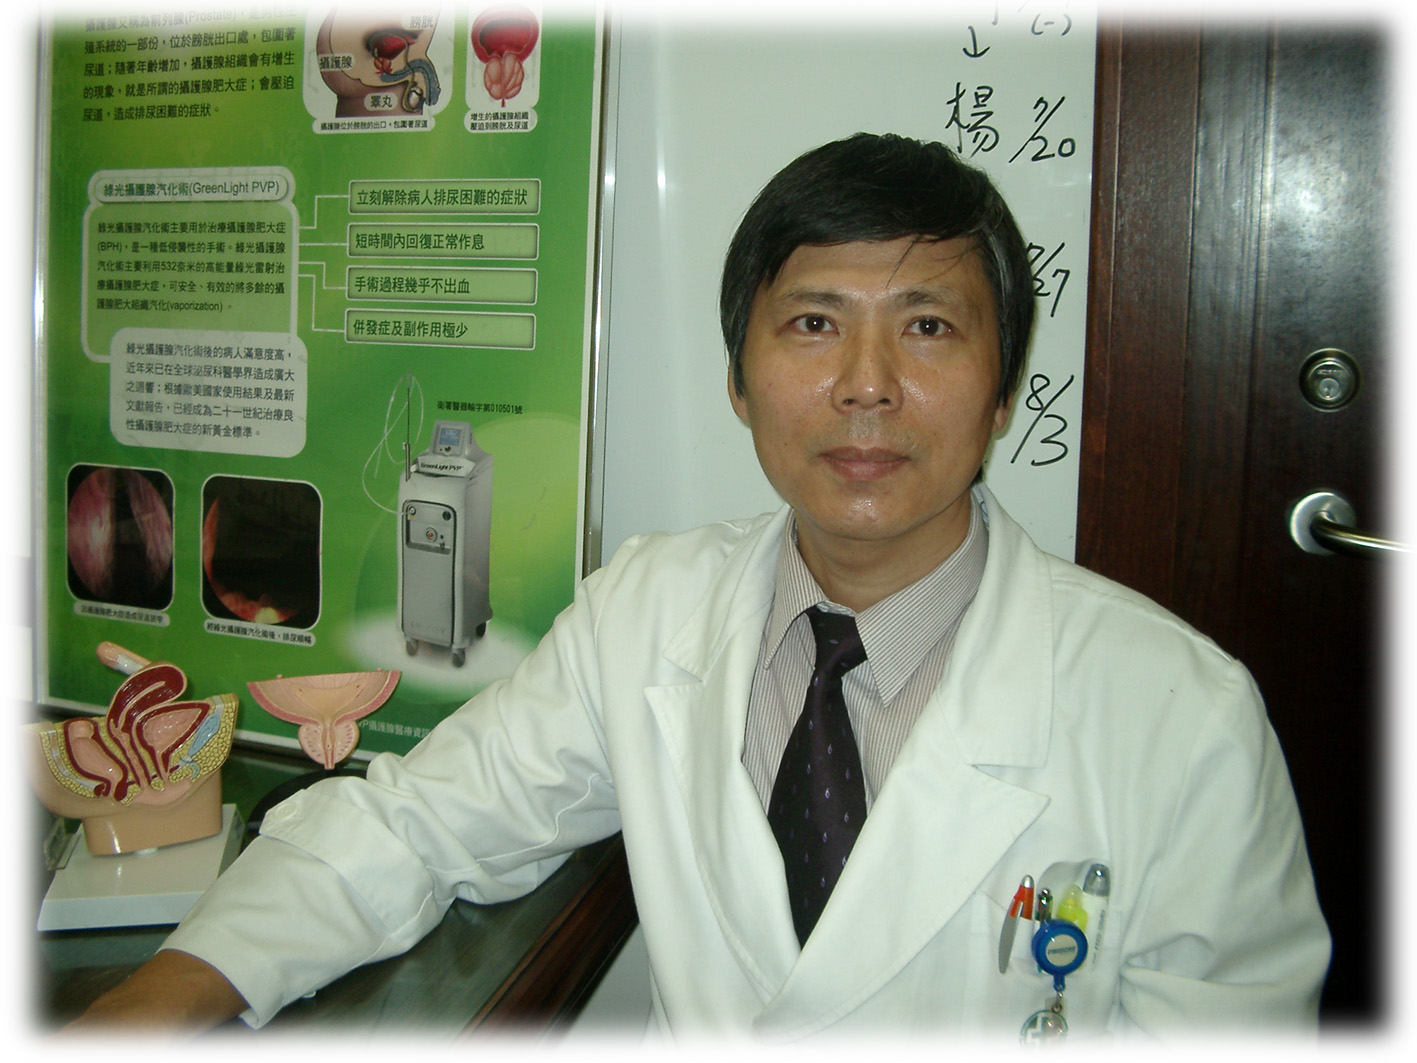 攝護腺綠光雷射汽化術(Green light PVP)；是一種高安全性，低副作用的新治療方式(相關圖片)